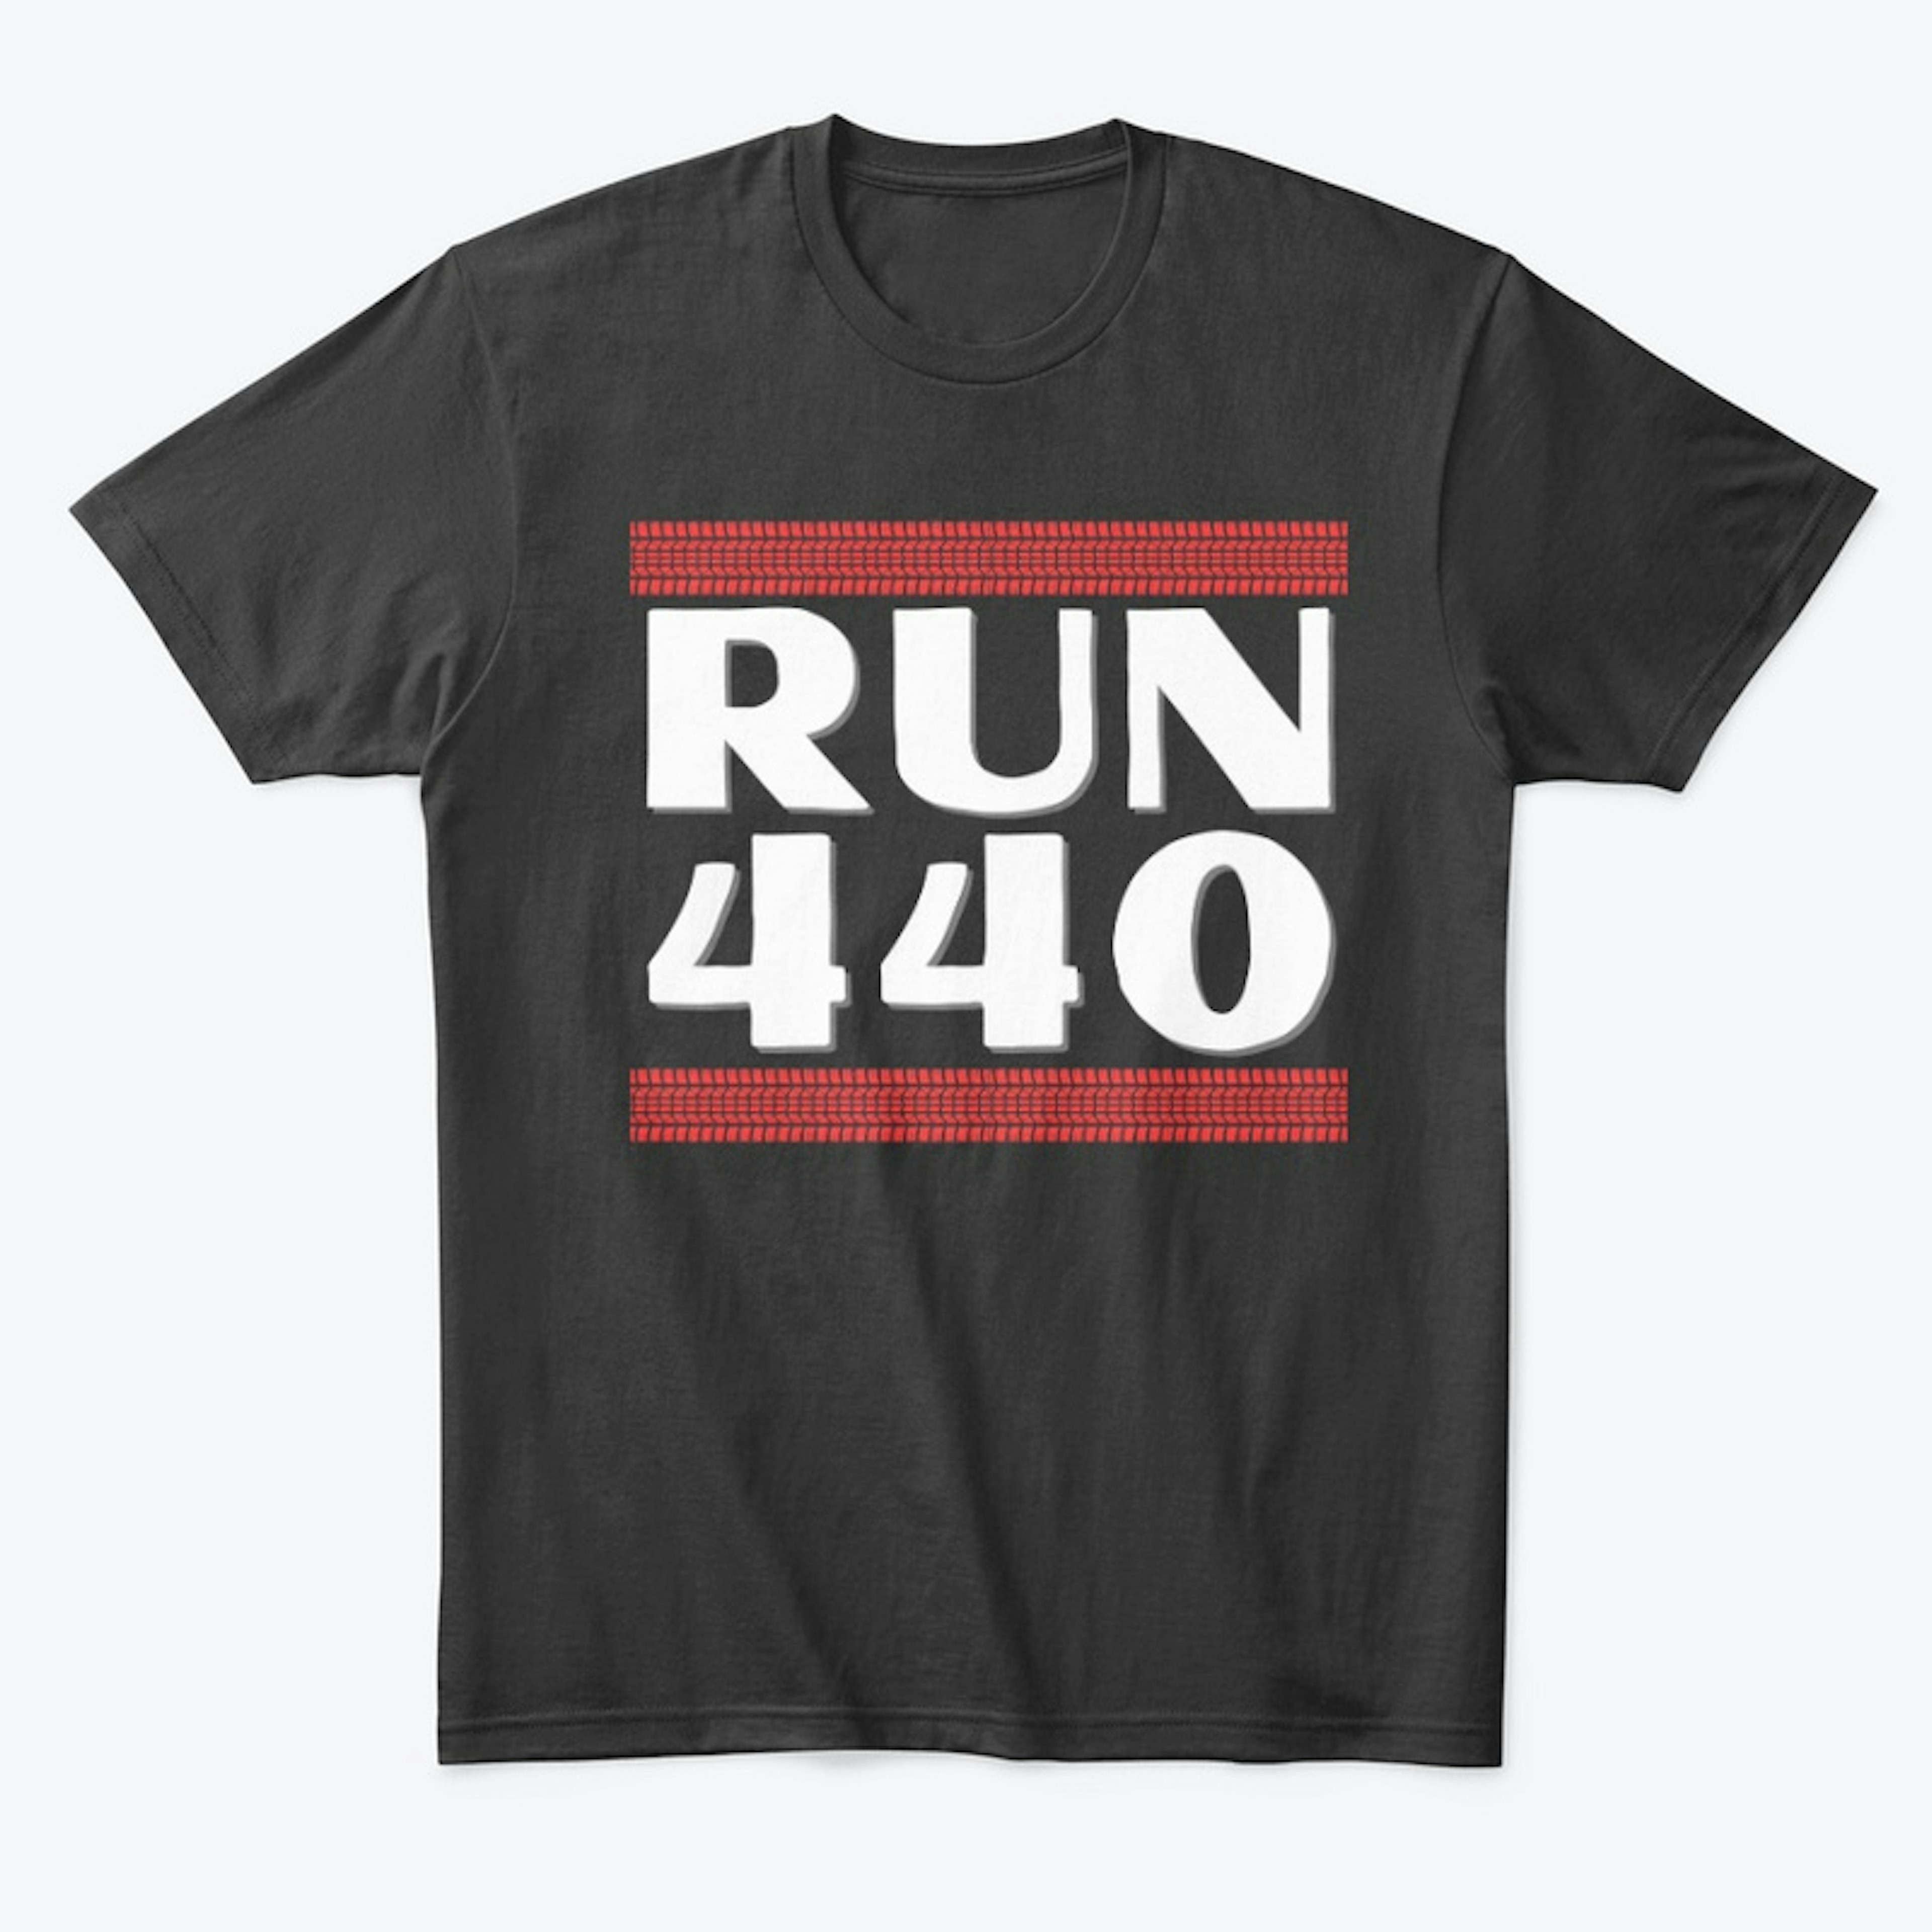 Run 440